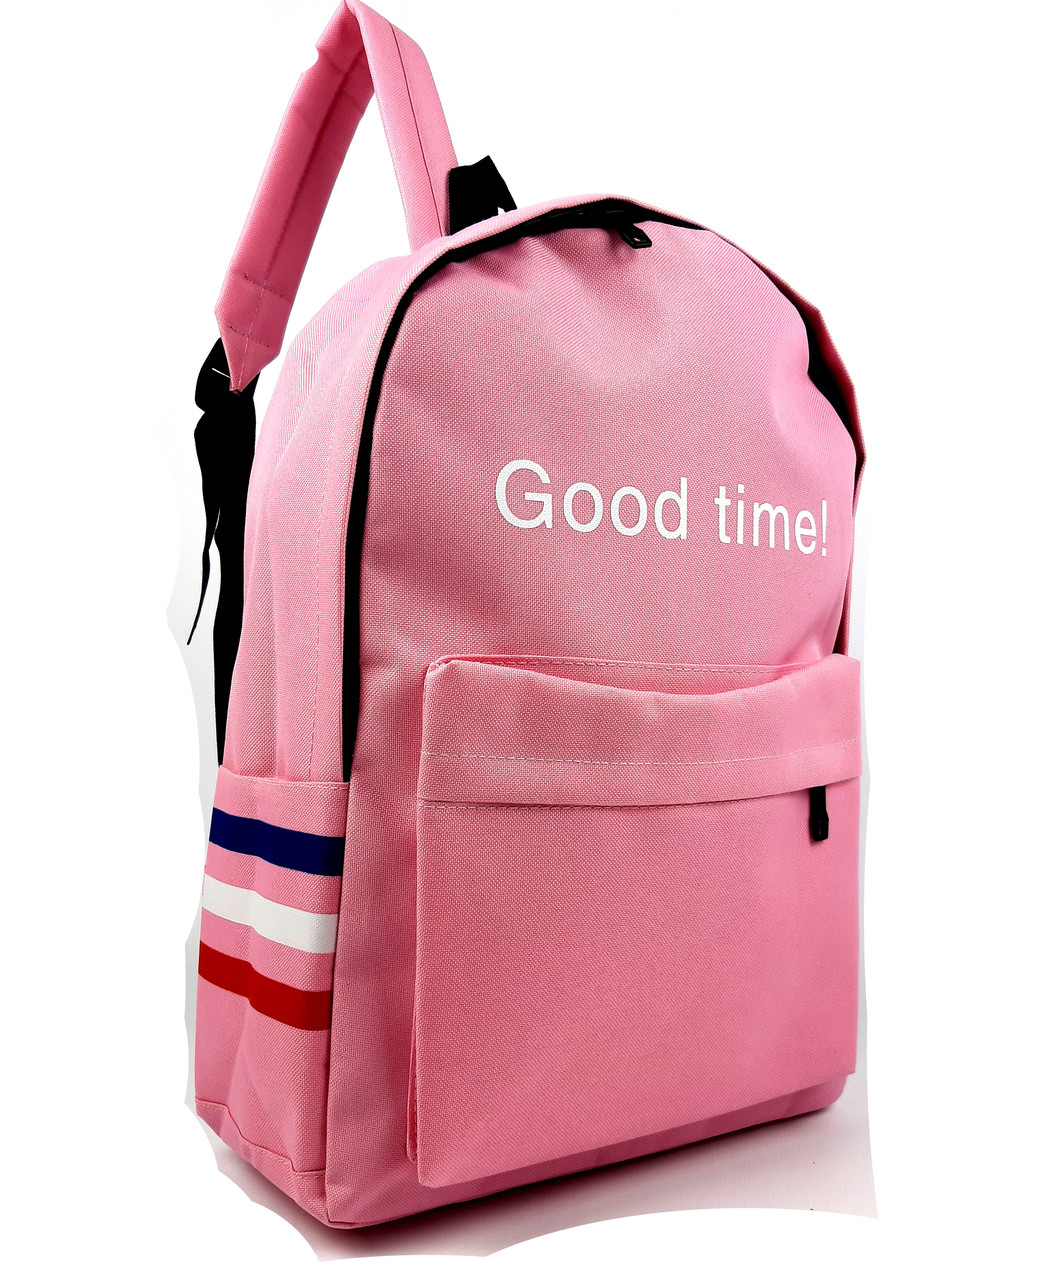 Жіночий рюкзак рожевий спортивного типу, відмінної якості "Good Time"